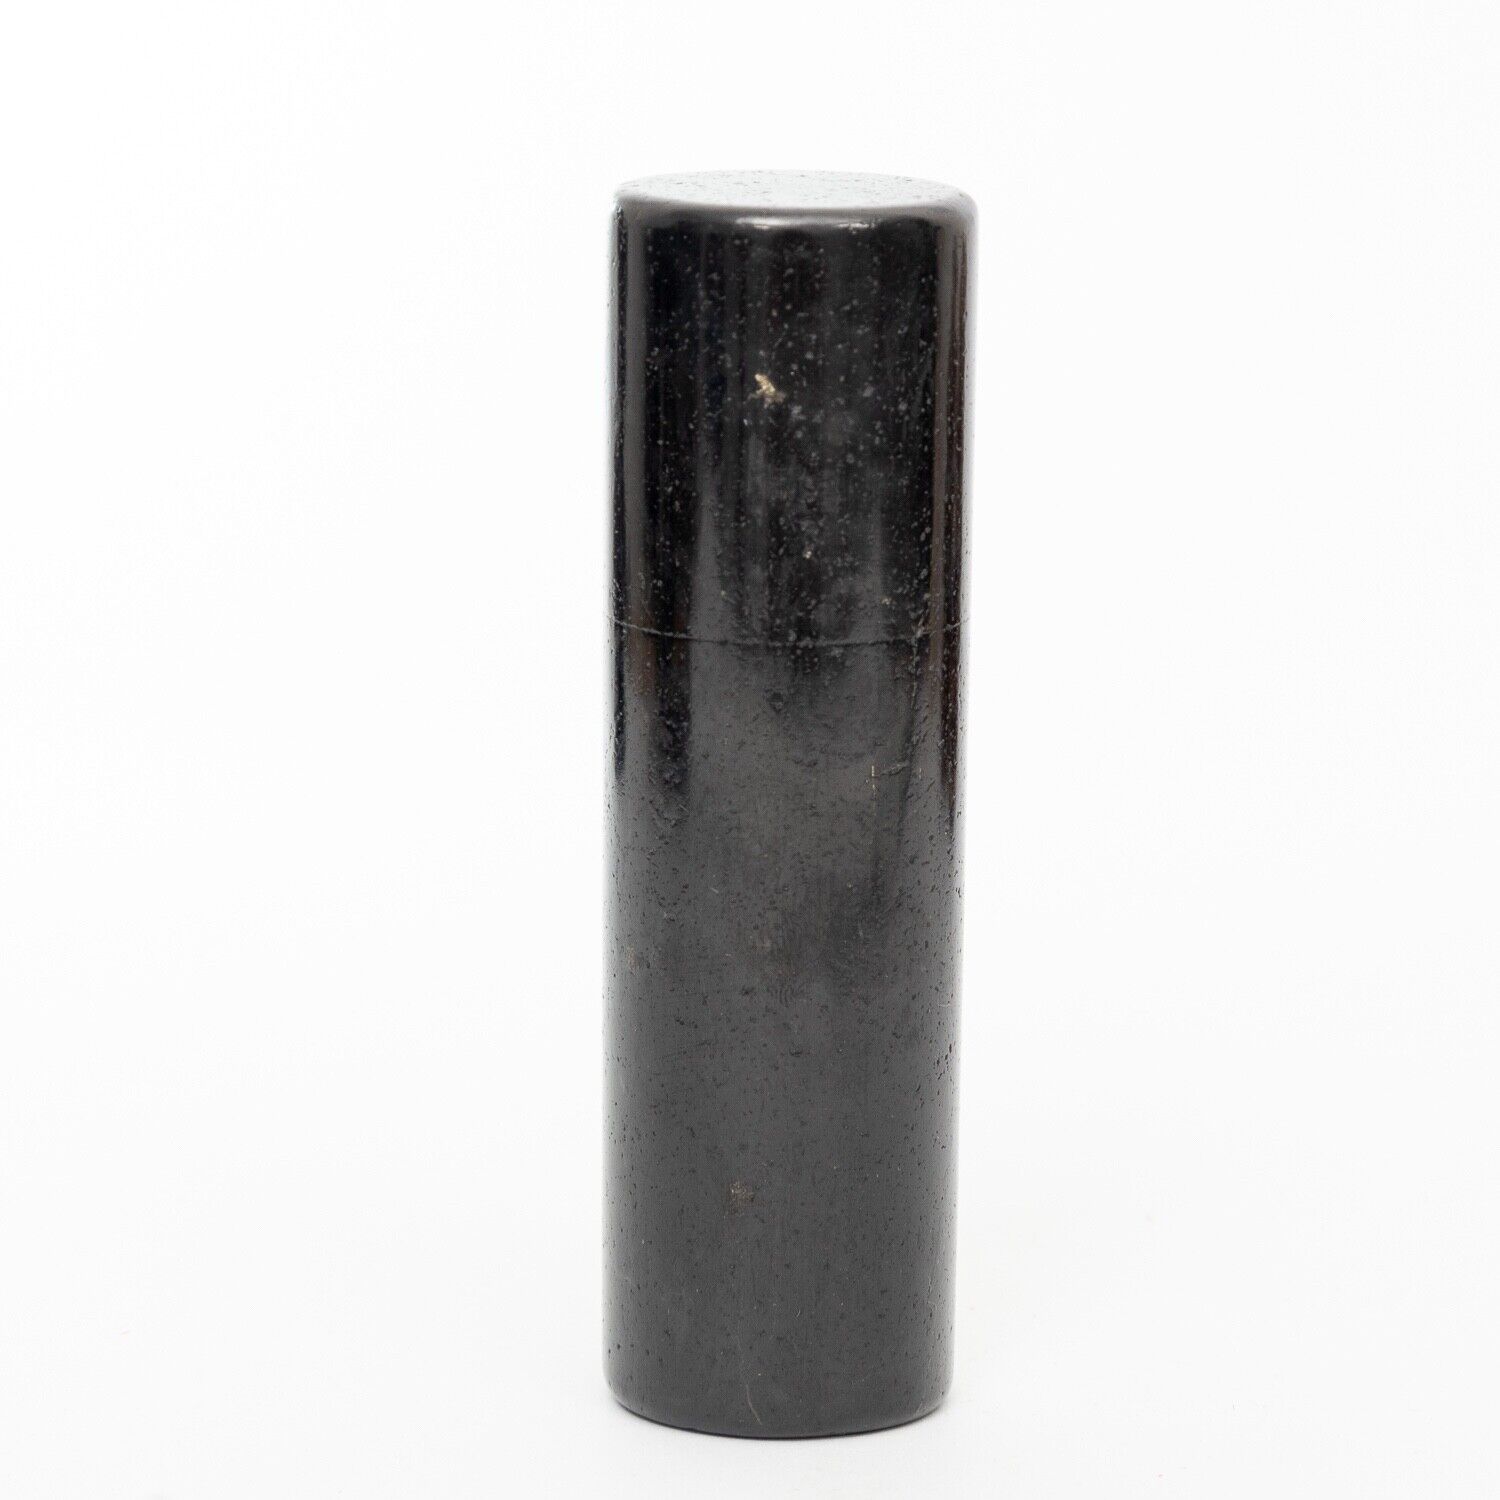 SHUNGITE polished Cylinder 5.47 oz healing chakra stone EMF protection chakra